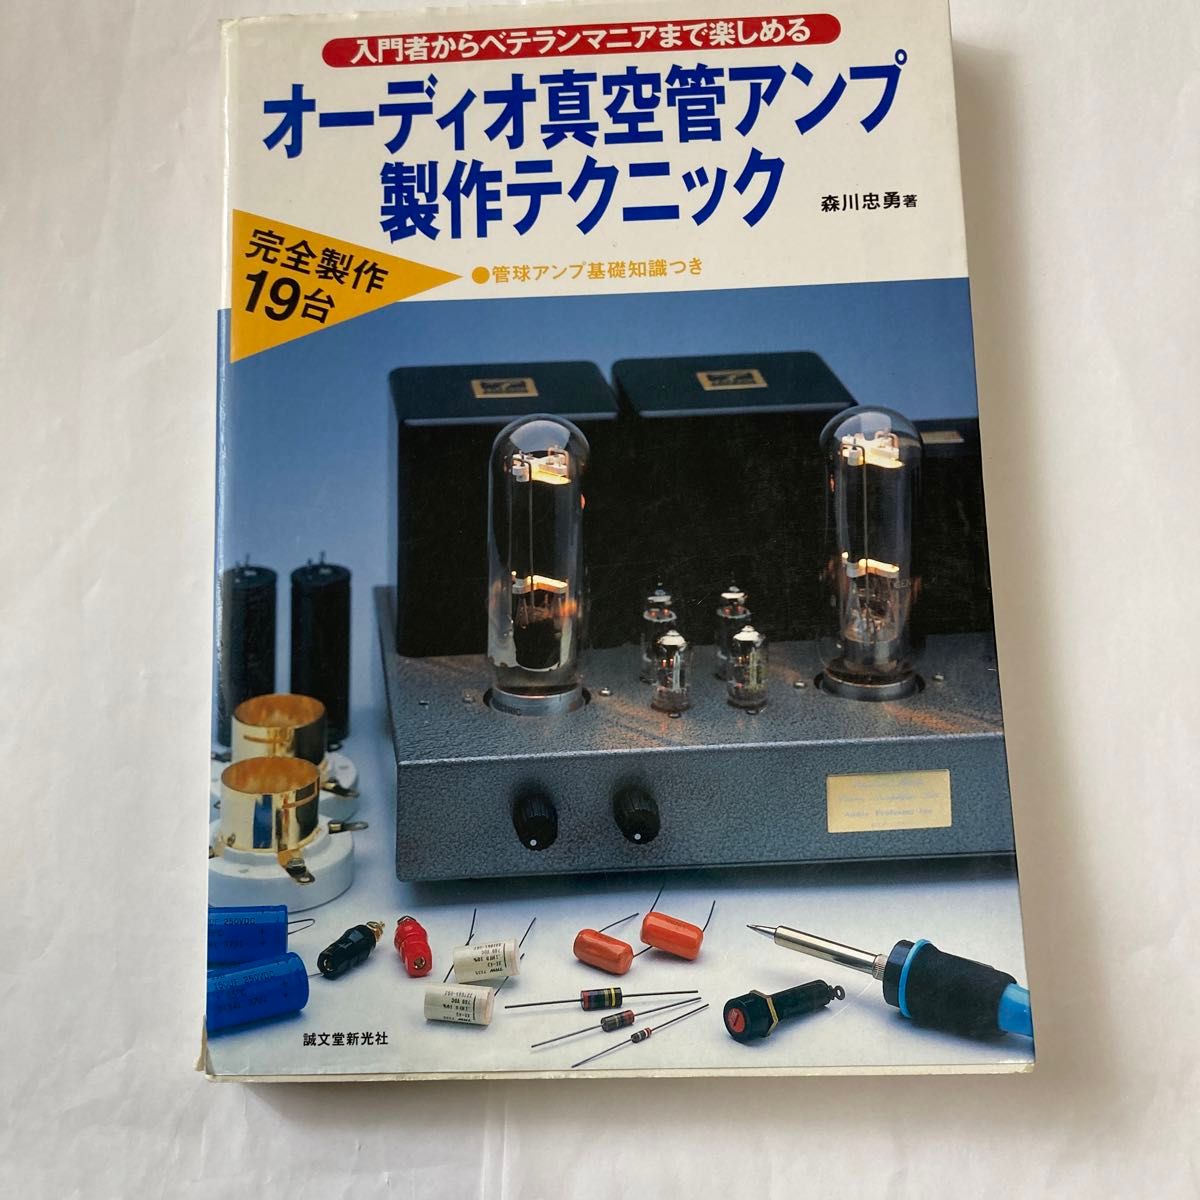 オーディオ真空管アンプ製作テクニック　森川忠勇氏著　2004年8月発行　真空管アンプ好きには良い書籍です。誠文堂新光社刊